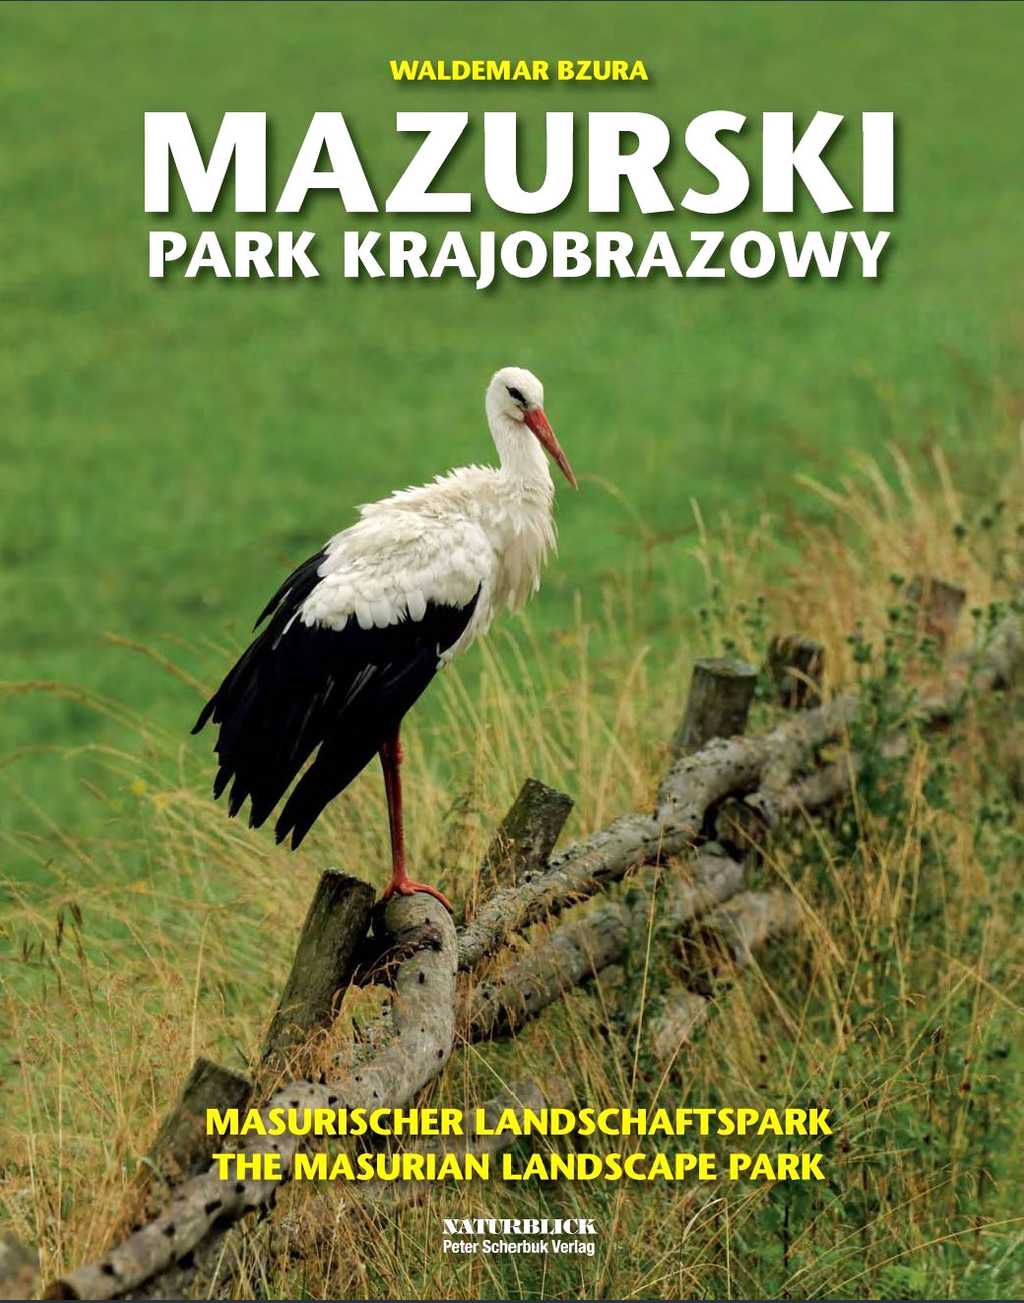 Masurischer Landschaftspark